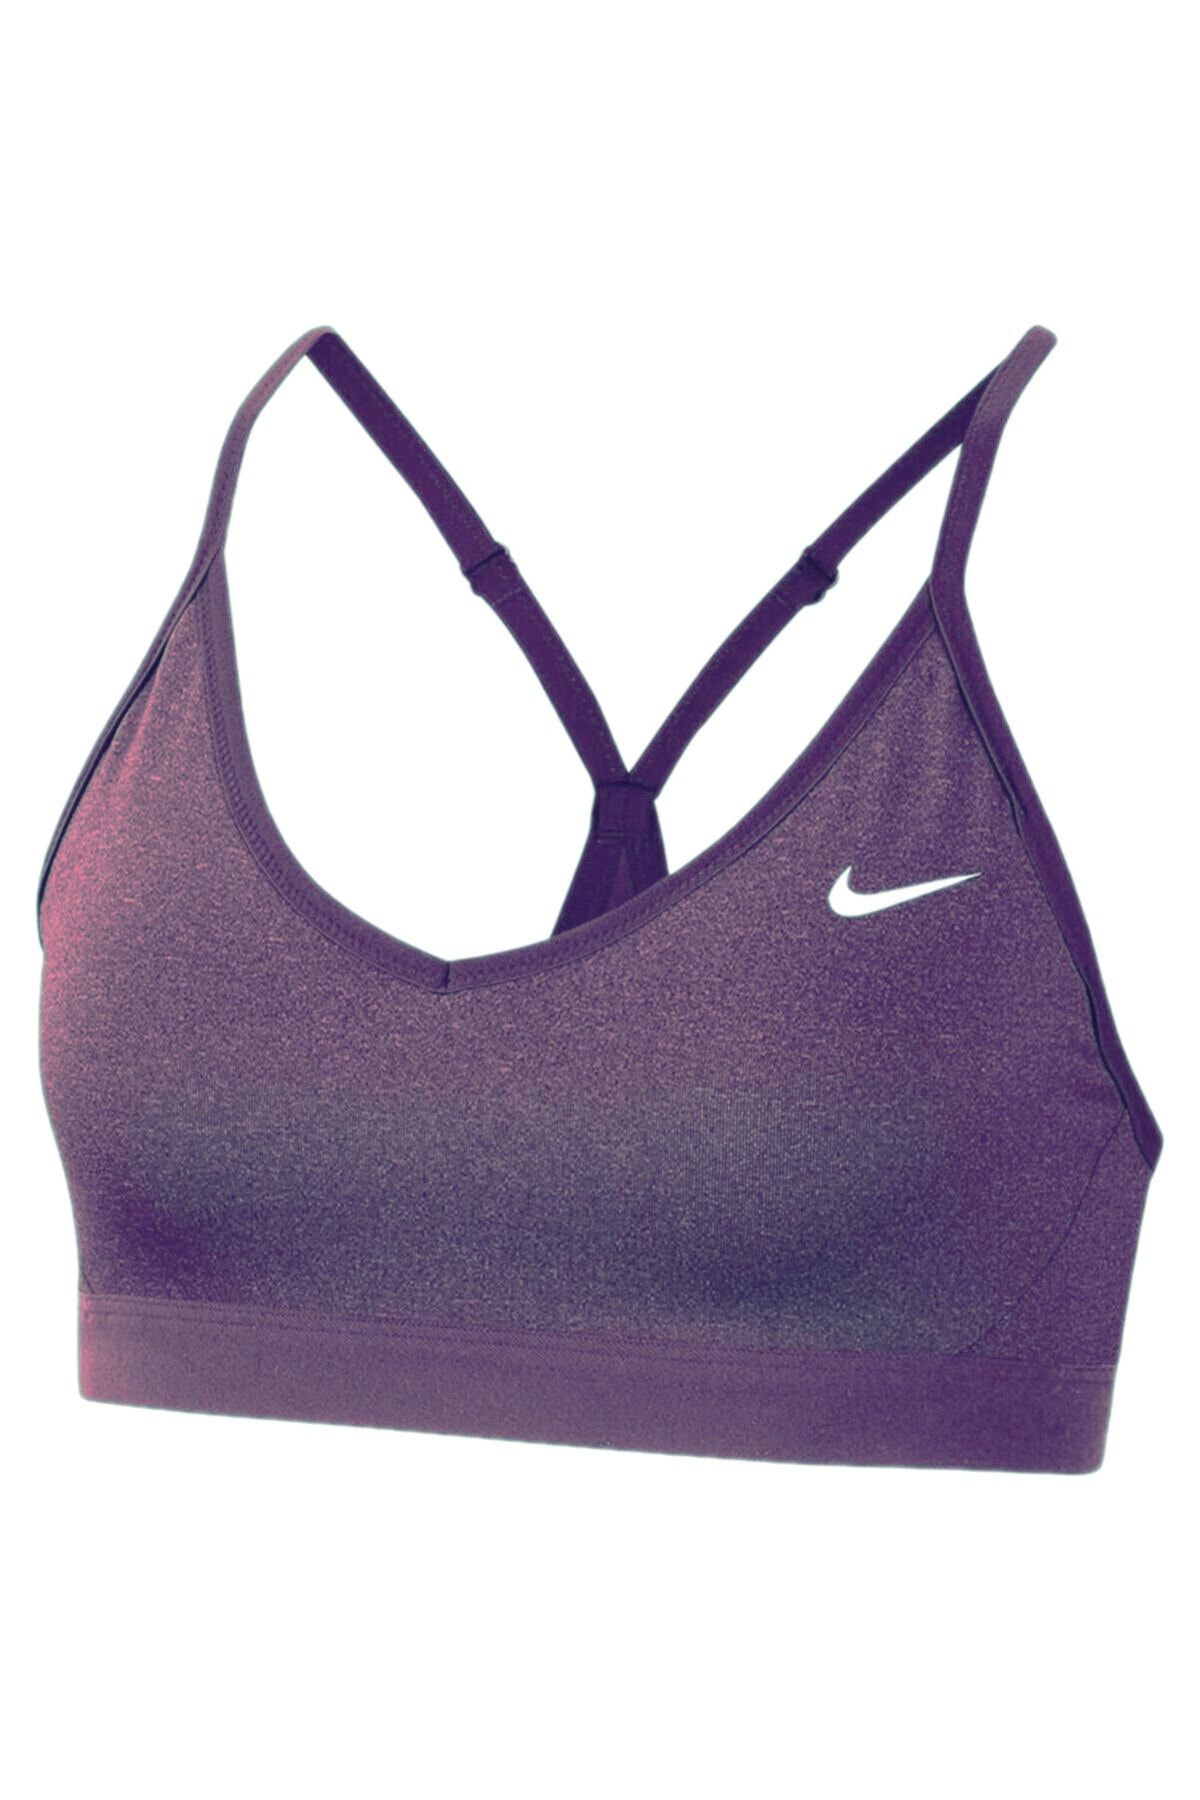 Nike Indy Bra - Mor Renk Kadın Sporcu Sutyen